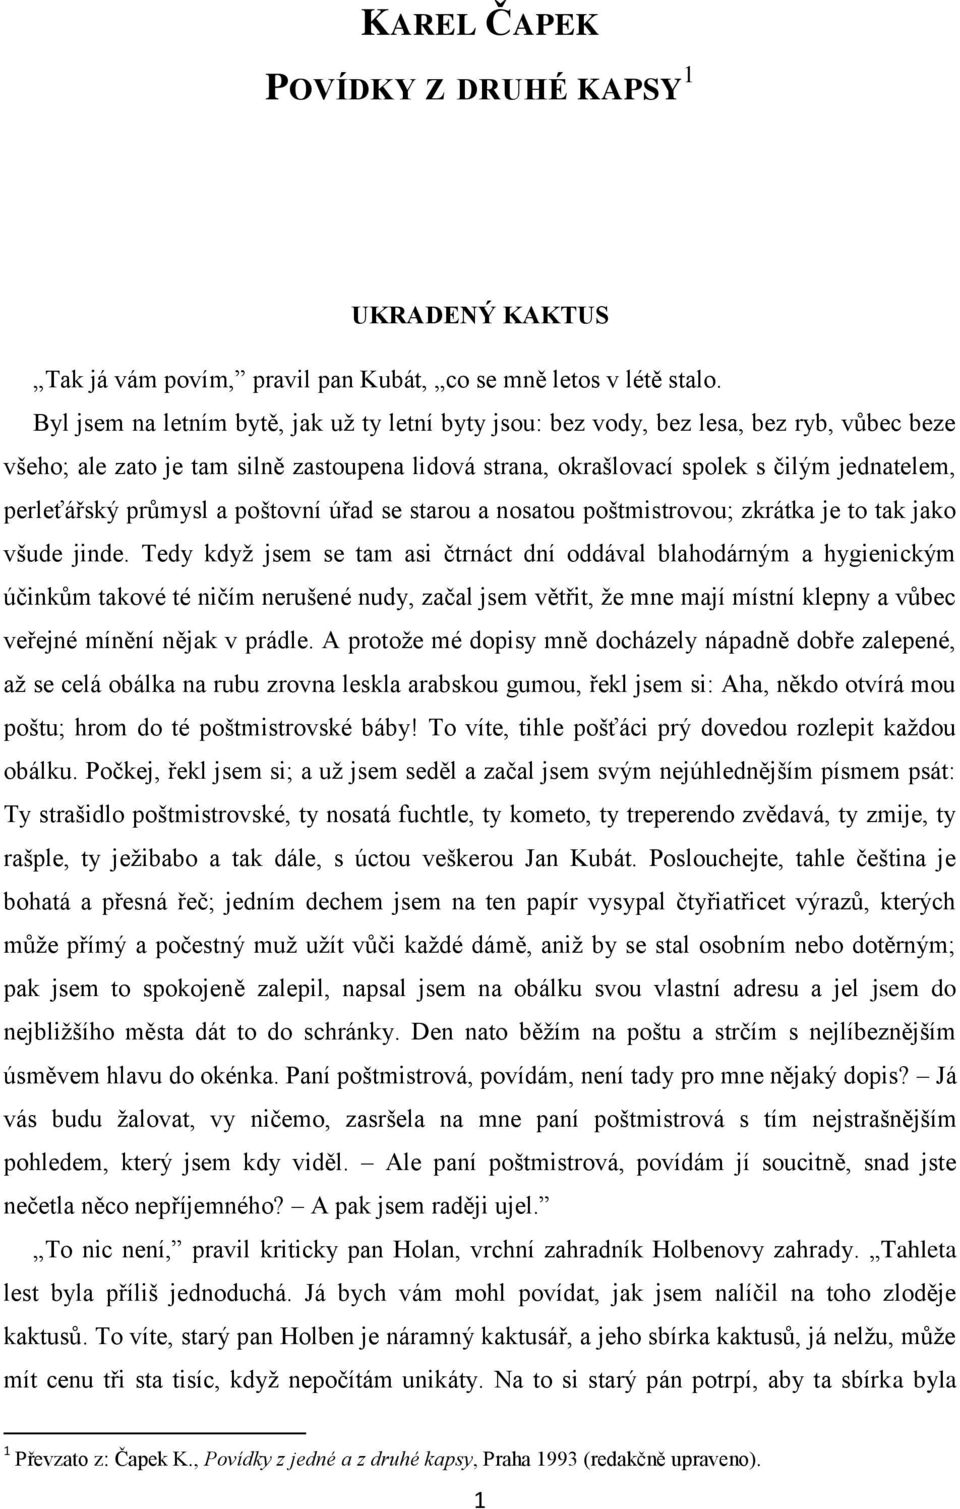 KAREL ČAPEK POVÍDKY Z DRUHÉ KAPSY 1 - PDF Stažení zdarma